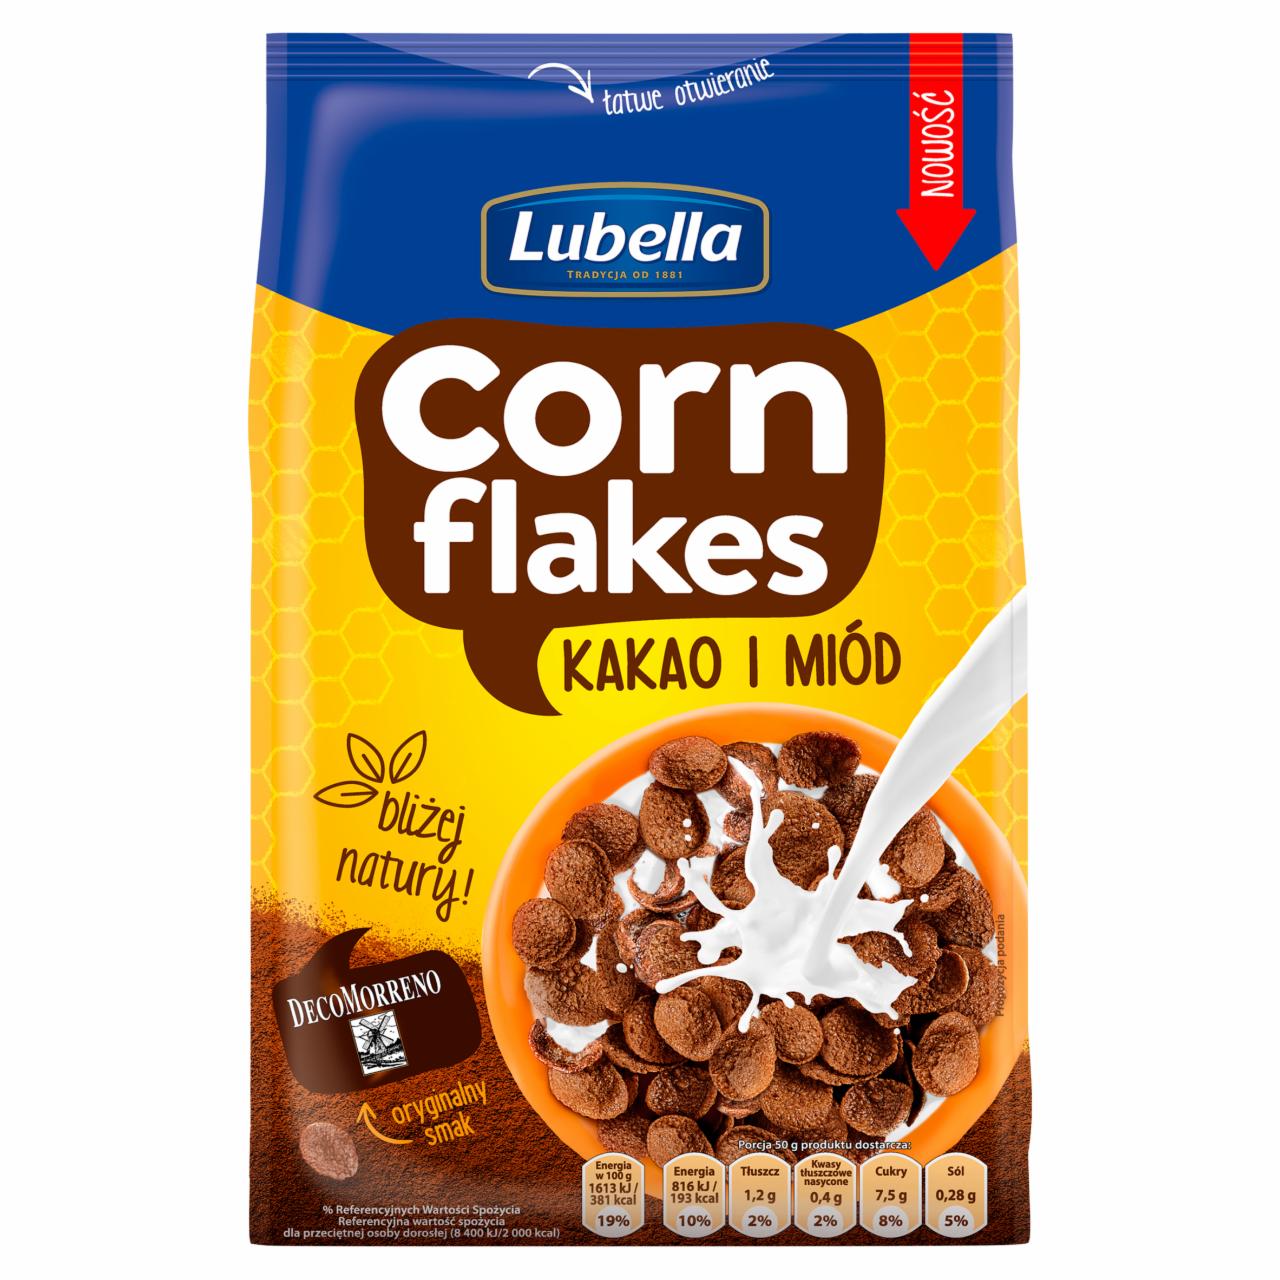 Zdjęcia - Lubella Corn Flakes Płatki kukurydziane kakao i miód 200 g